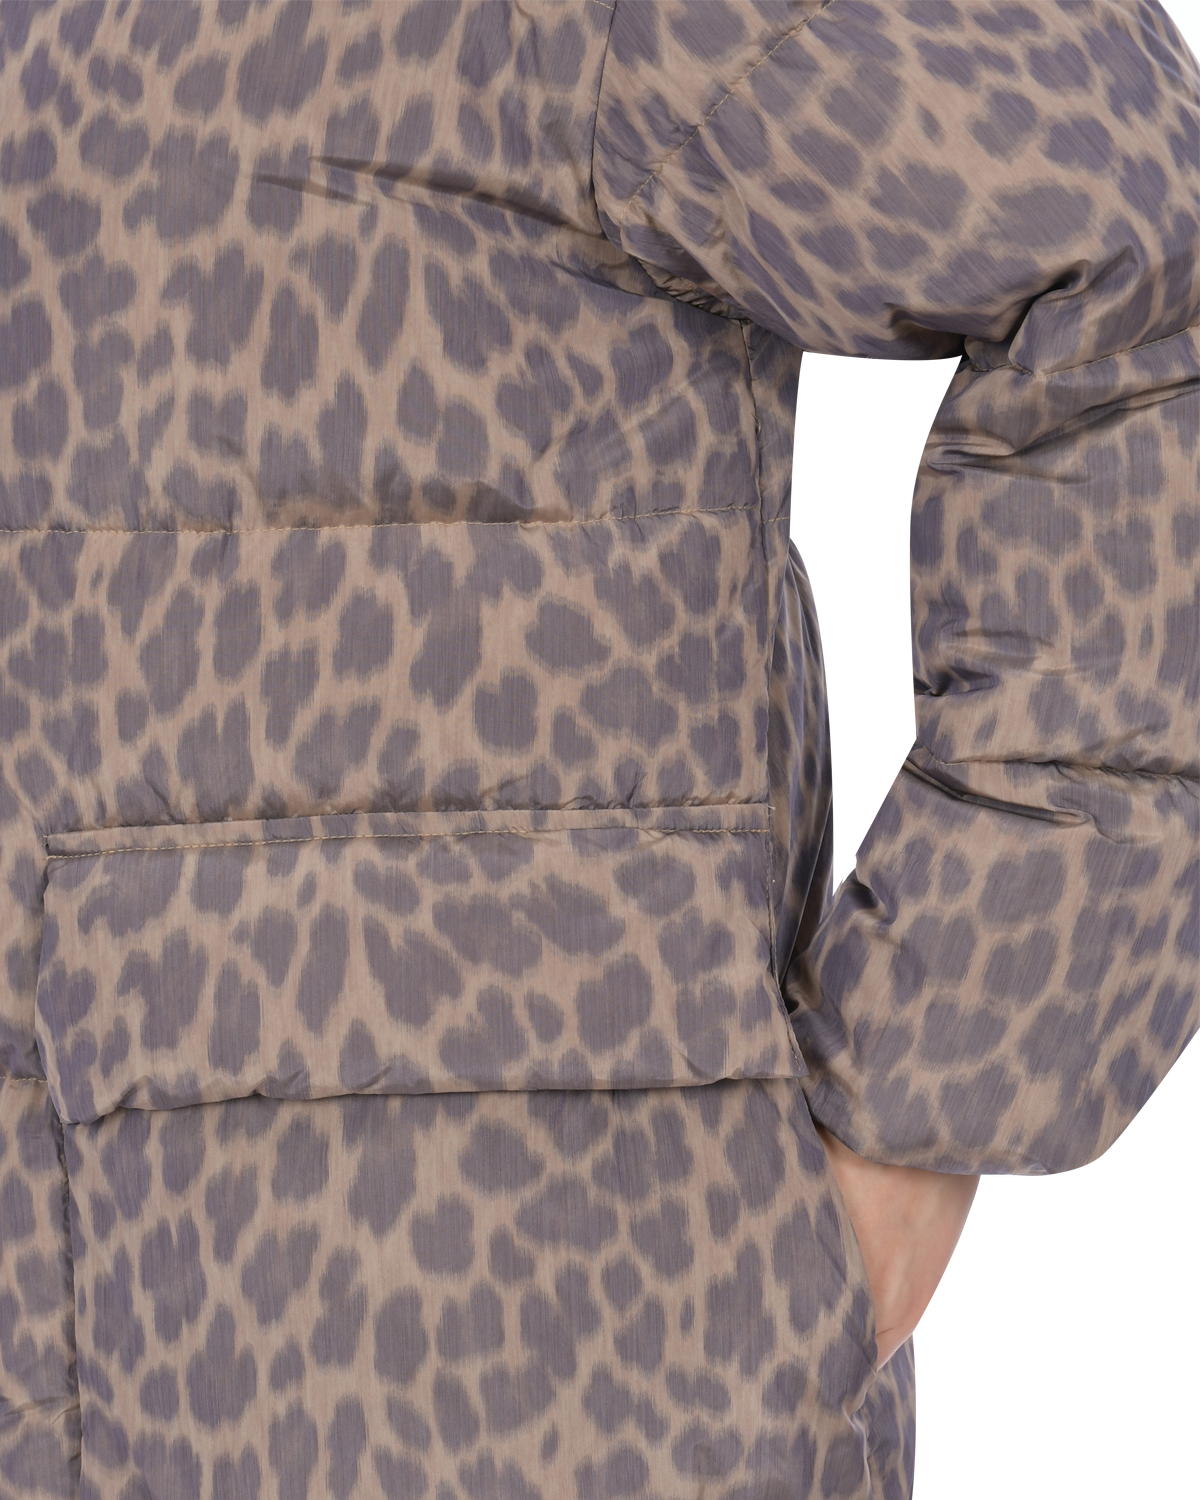 Пуховая куртка с леопардовым принтом Freedomday, размер 38, цвет бежевый - фото 6